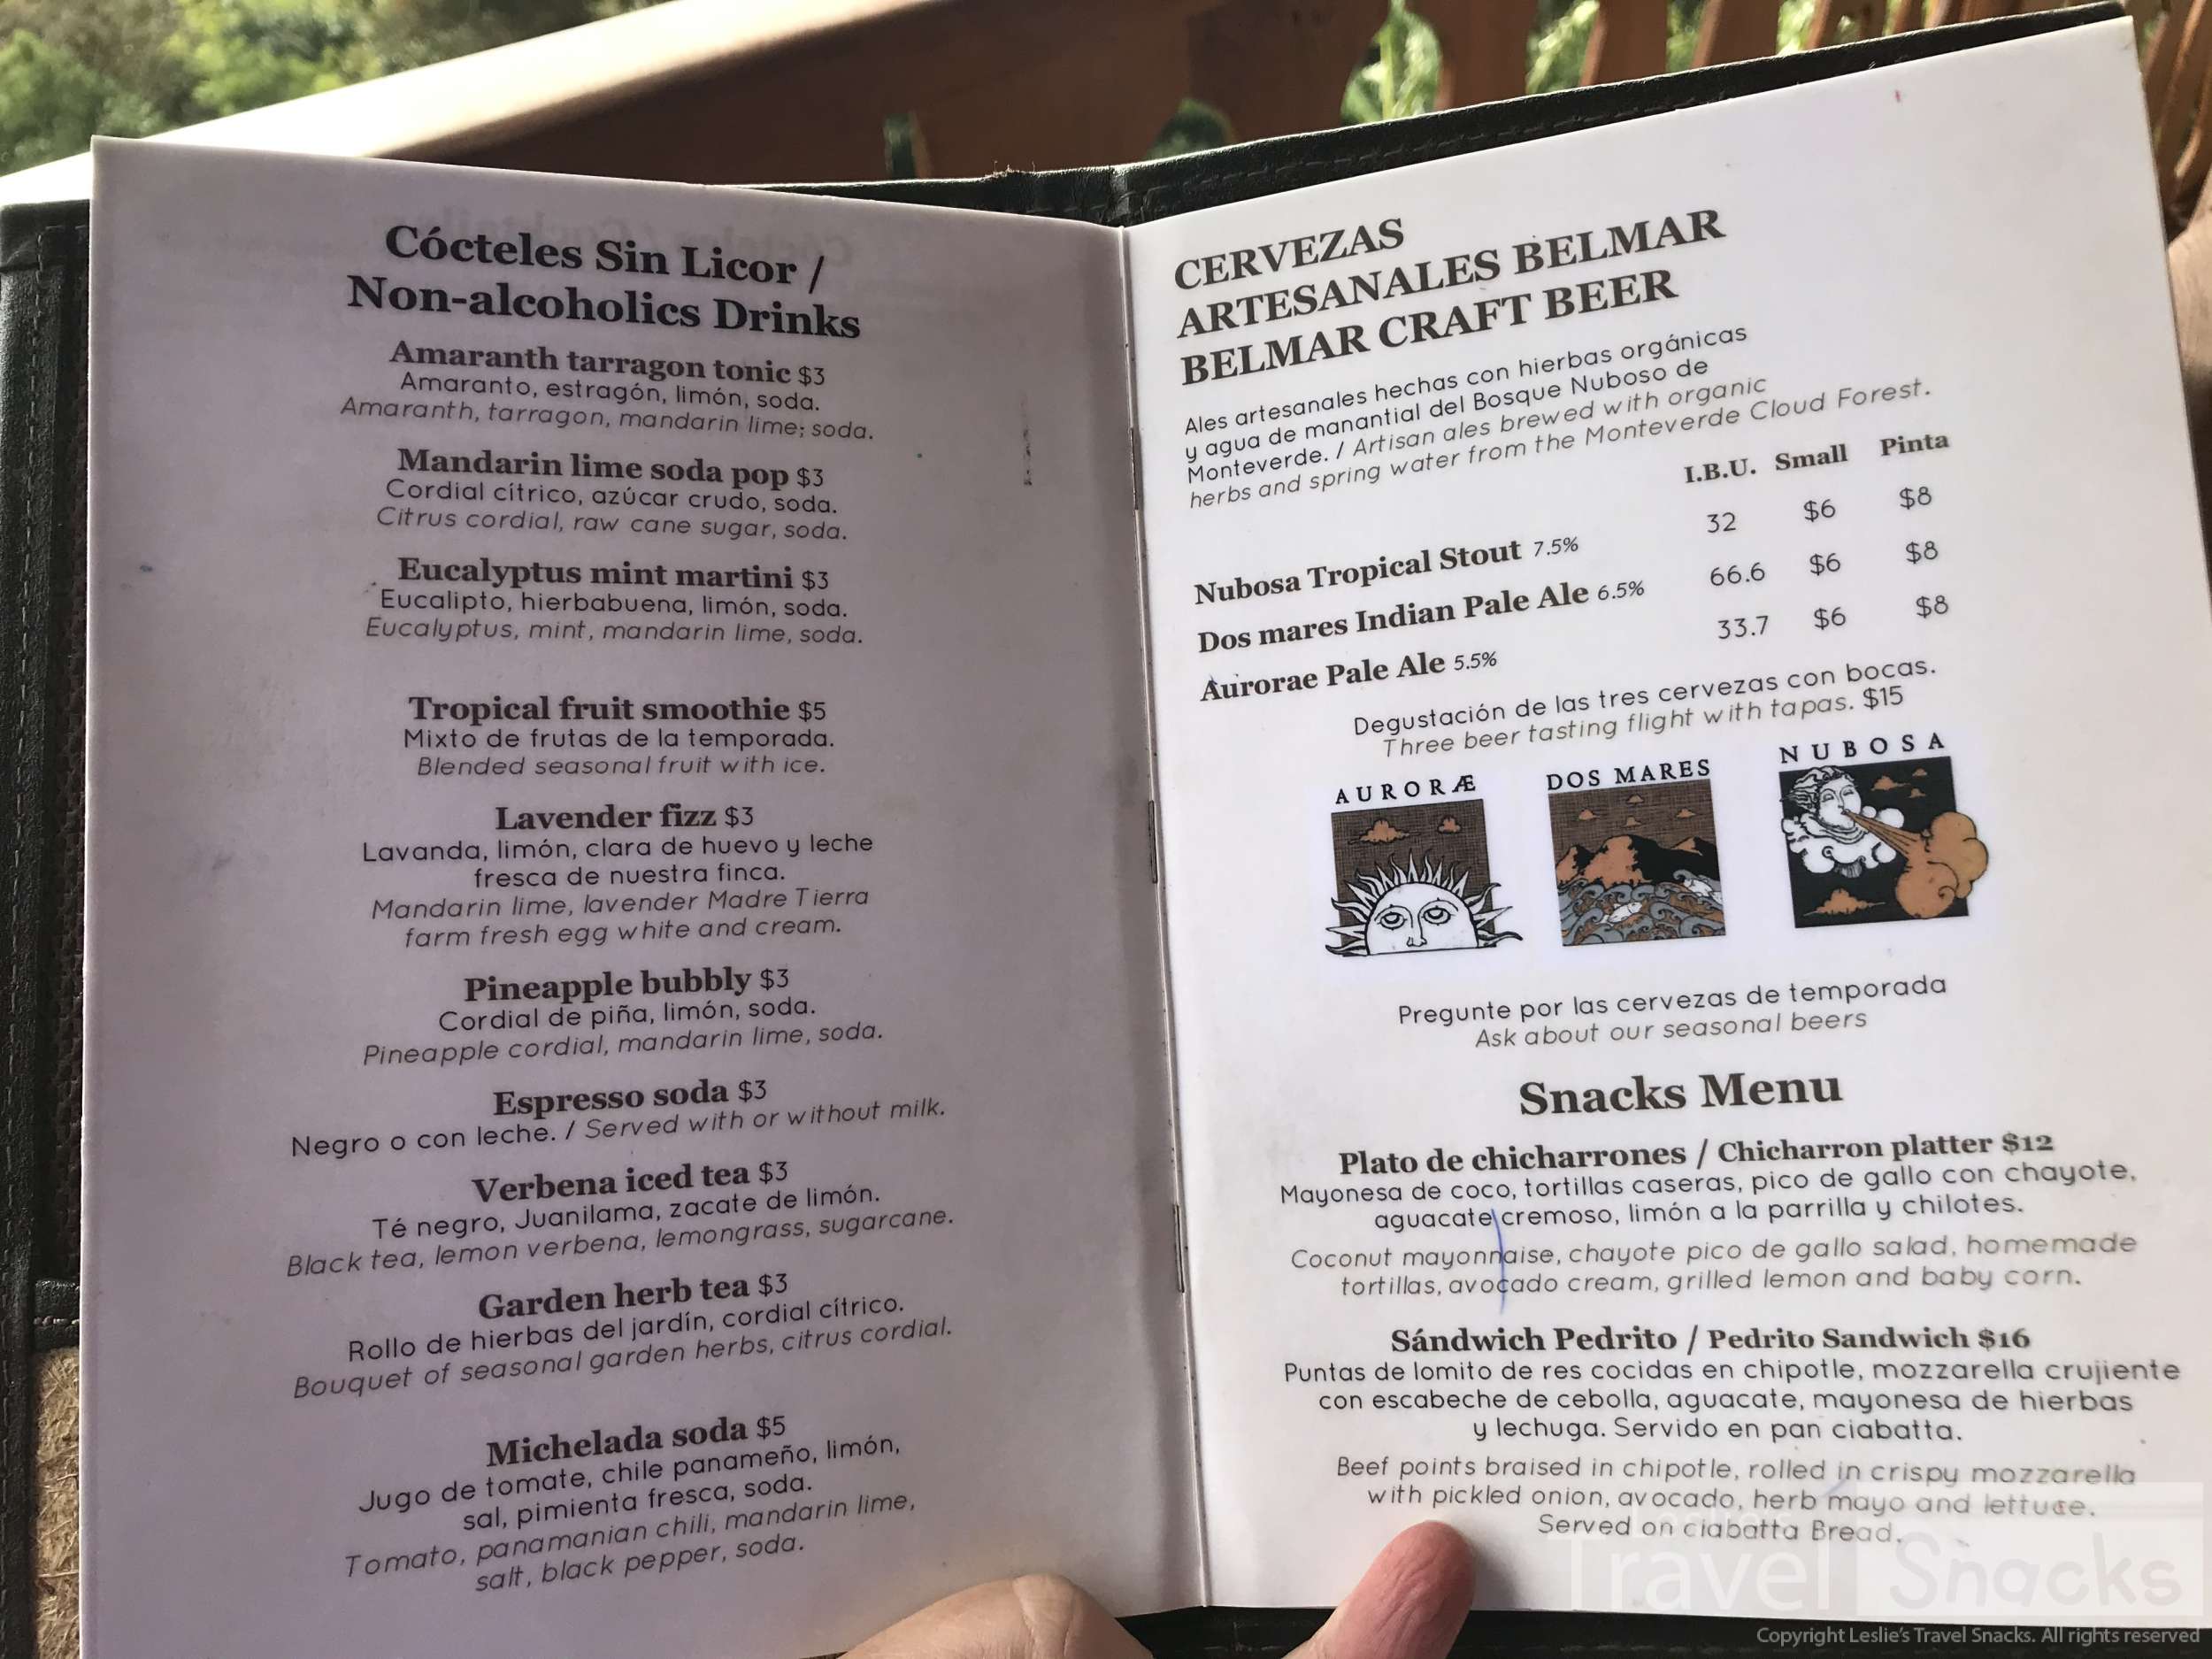 Celajes drink and snacks menu